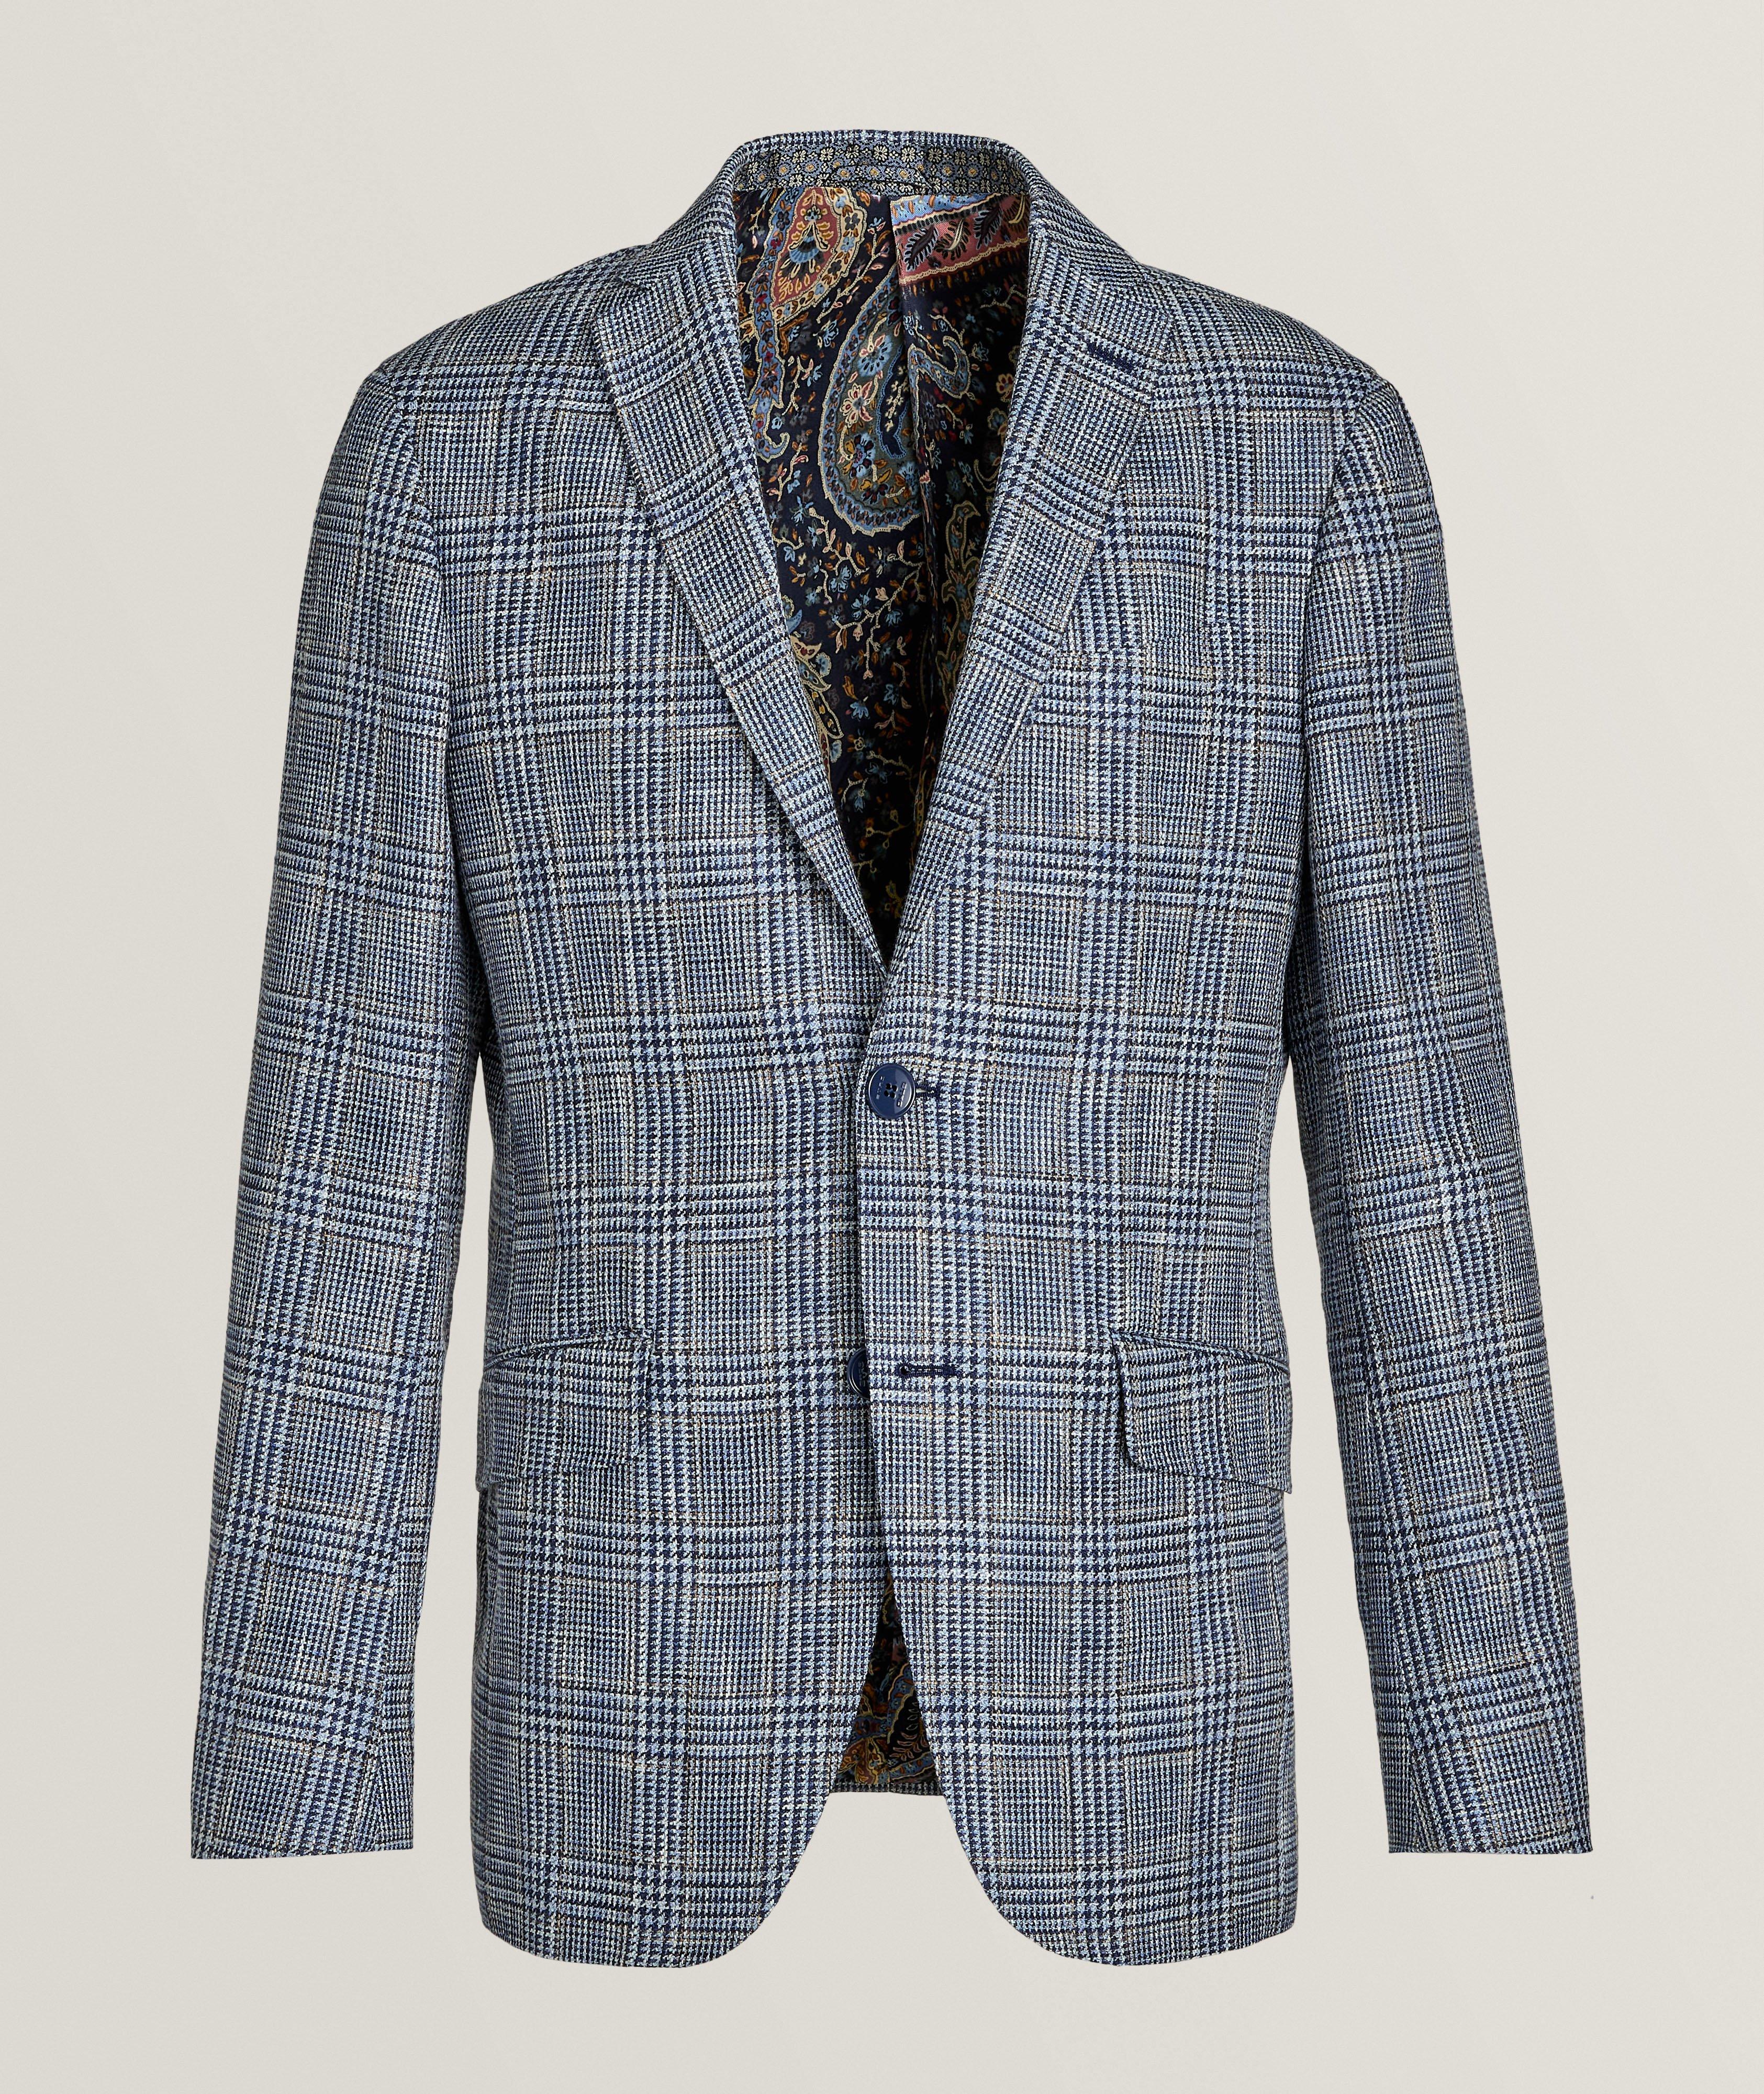 Checkered Cotton, Linen & Wool Sport Jacket